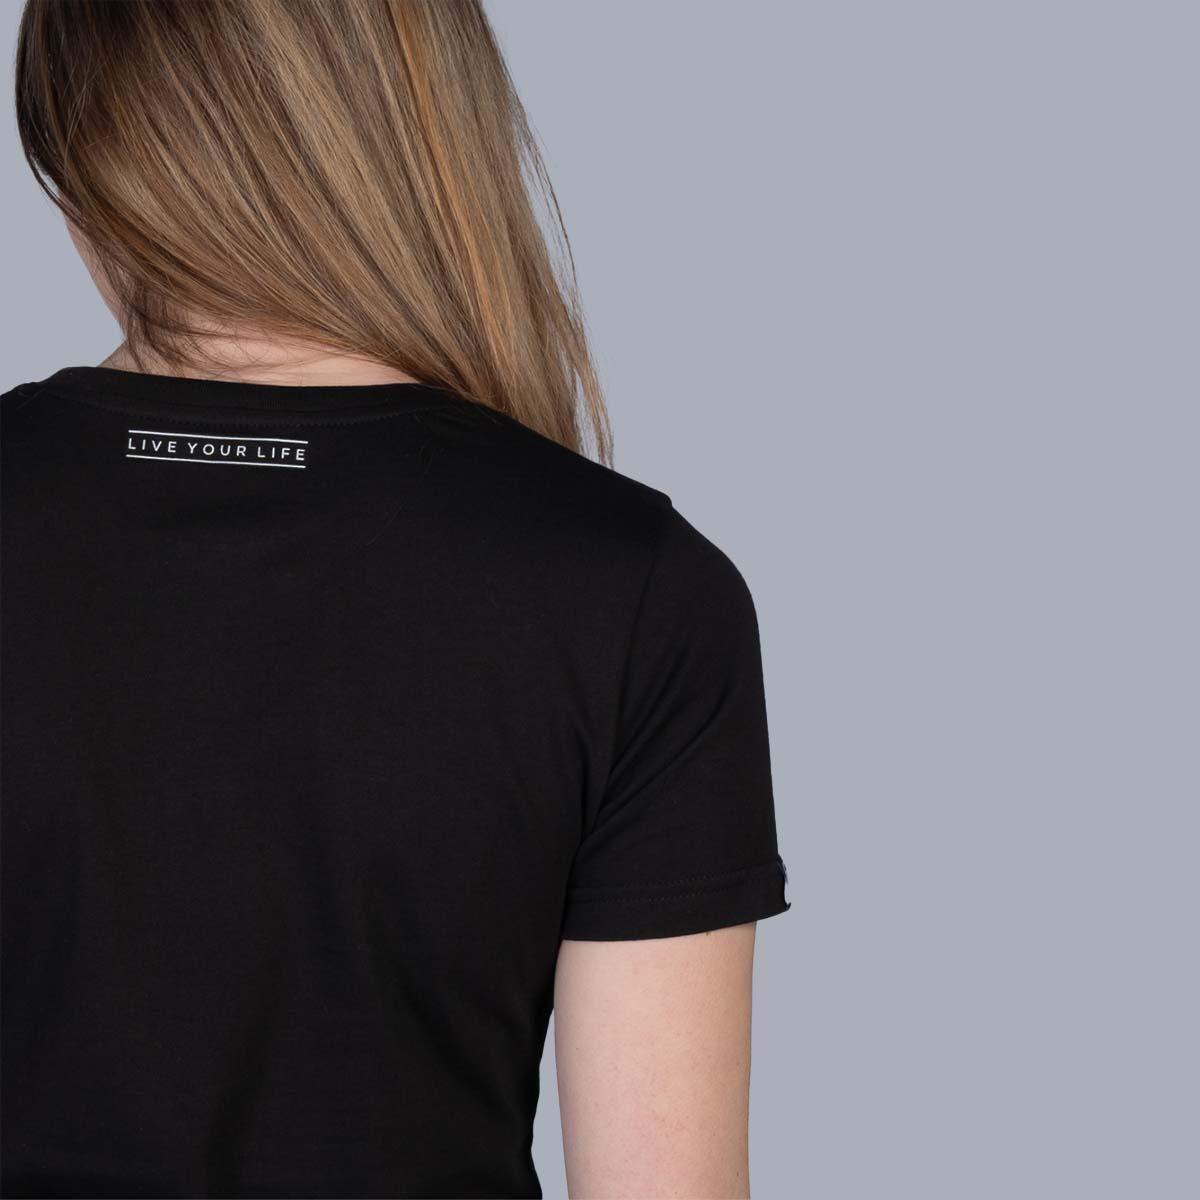 Stay Strong Palabra Box Camiseta de damas reflectantes - negro